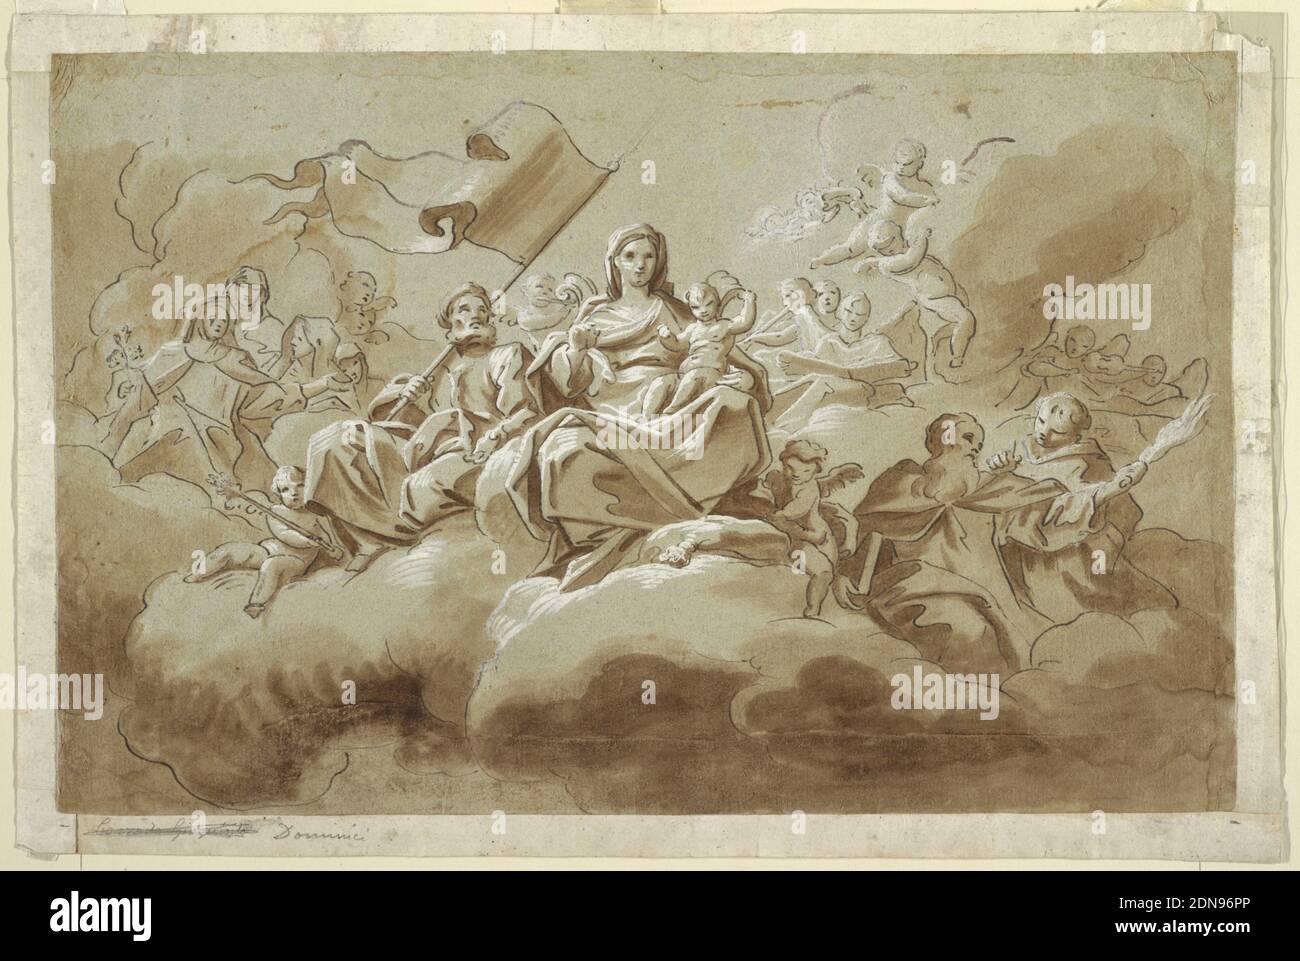 La Vierge à l'enfant entourée de saints, Antonio de' Dominici, italien, ca. 1730–après 1800, stylo et encre brune, pinceau et lavage, gouache blanc sur papier bleu-gris; verso : crayon noir, pinceau et gouache blanc, rectangle horizontal. Assis dans des nuages, entouré d'anges, Saint Joseph est assis à côté de la Vierge Marie, portant un standard. Marie tient le Christ Christ. Autour d'eux sont des figures et des chérubins assis sur des nuages. Verso: Une étude, à peu près esquissée de crayon noir avec gouache blanc, de la partie supérieure d'un homme avec des bras étirés en profil, tourné vers la droite., Naples, Italie Banque D'Images